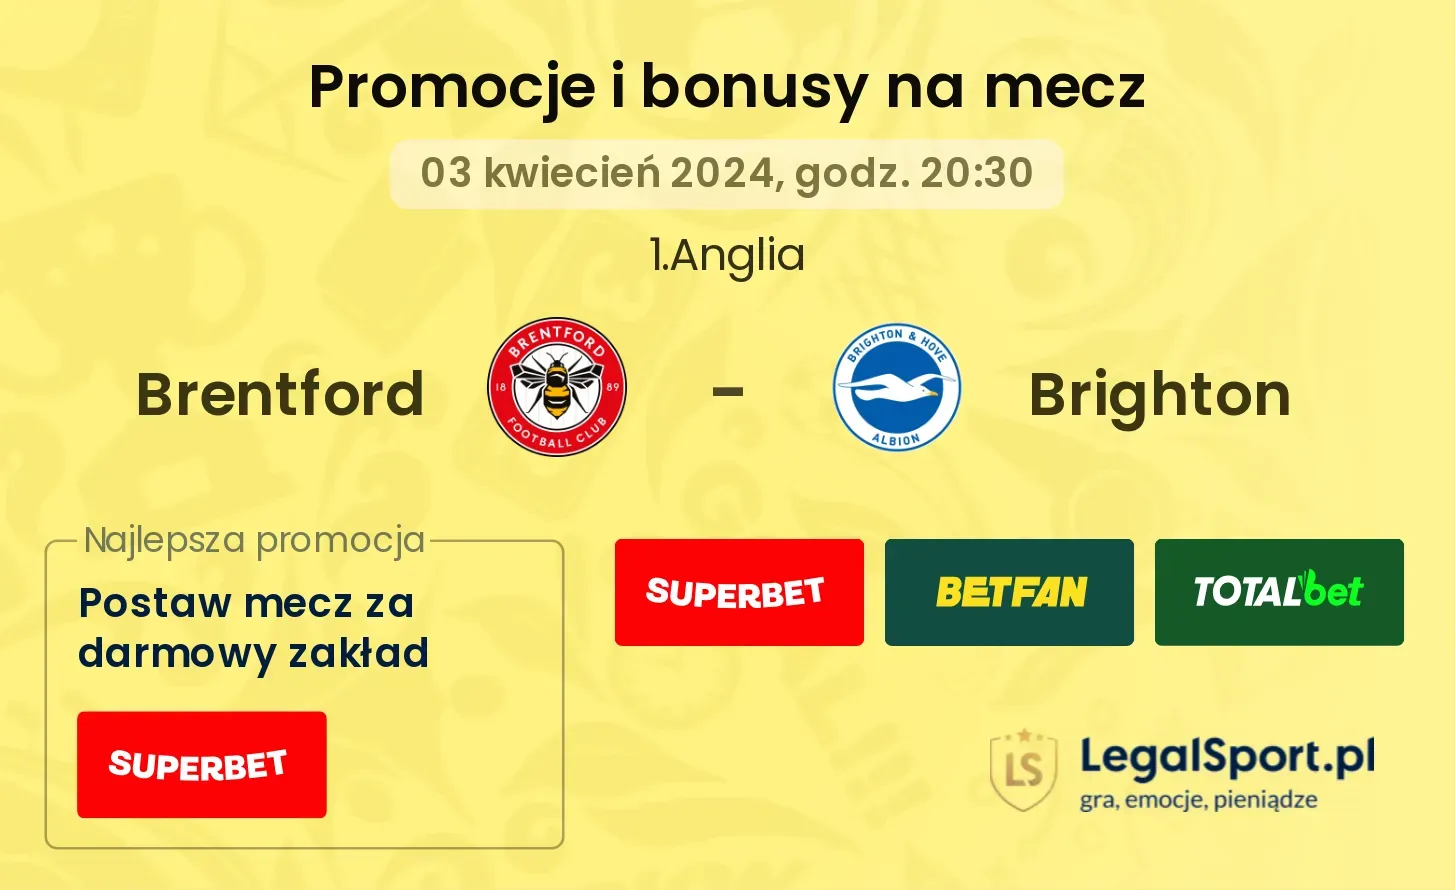 Brentford - Brighton promocje bonusy na mecz